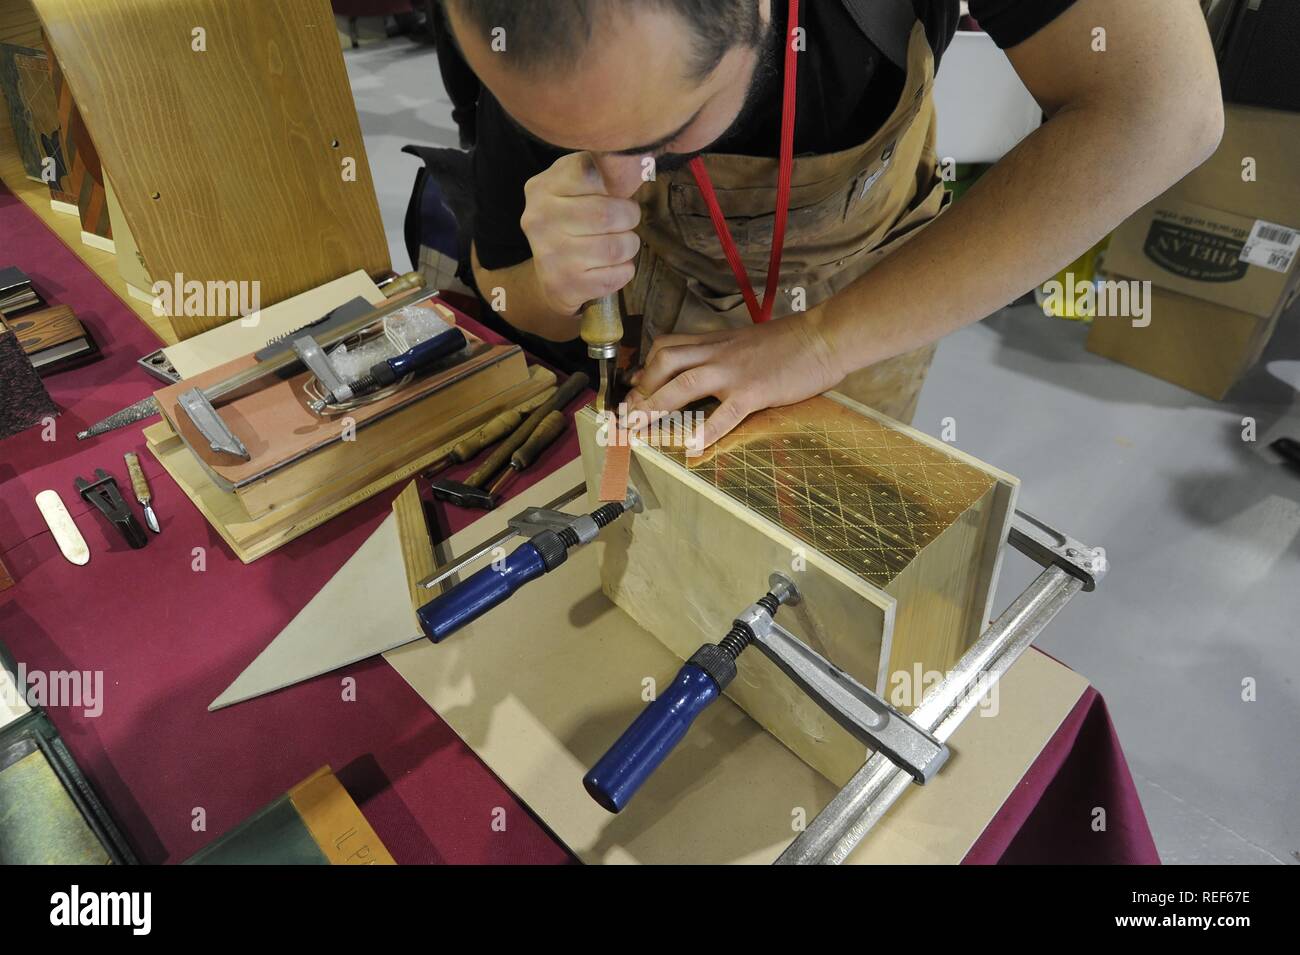 Milan (Italie), juste de la Culture, démonstration de reliure artisanale pour la restauration de livres anciens Banque D'Images